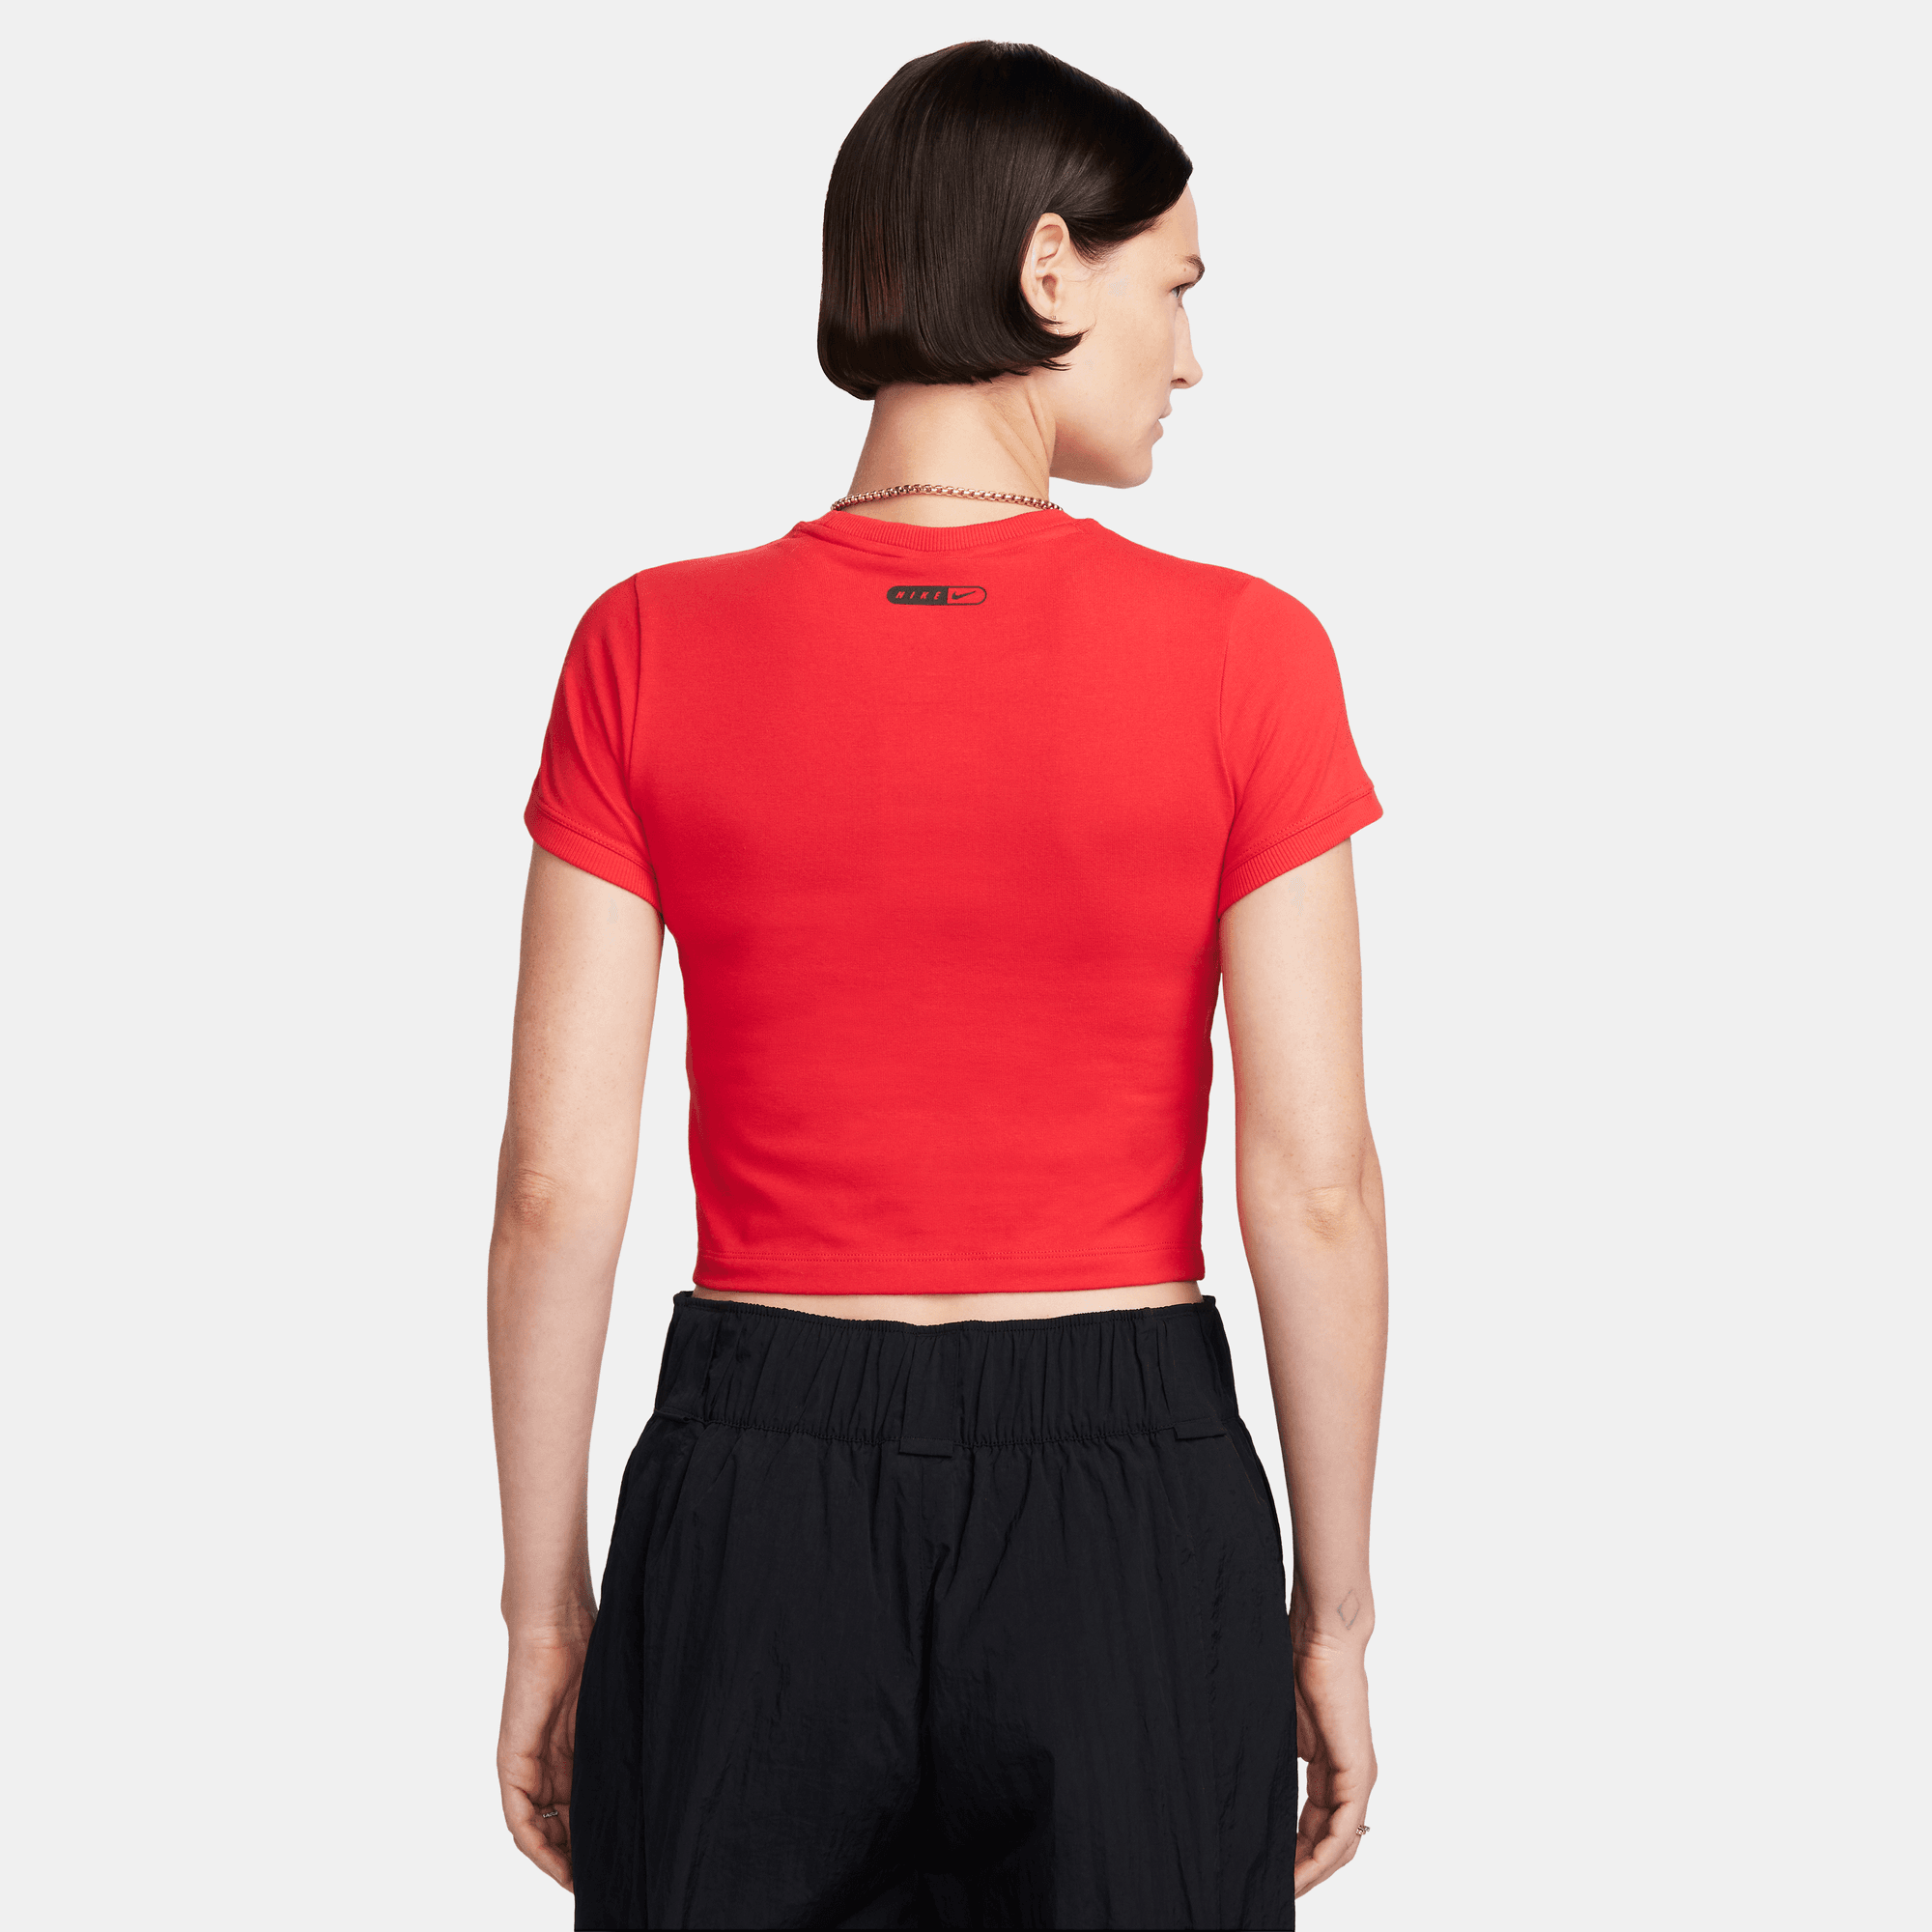 Nike Sportswear Women's Red Cropped T-Shirt